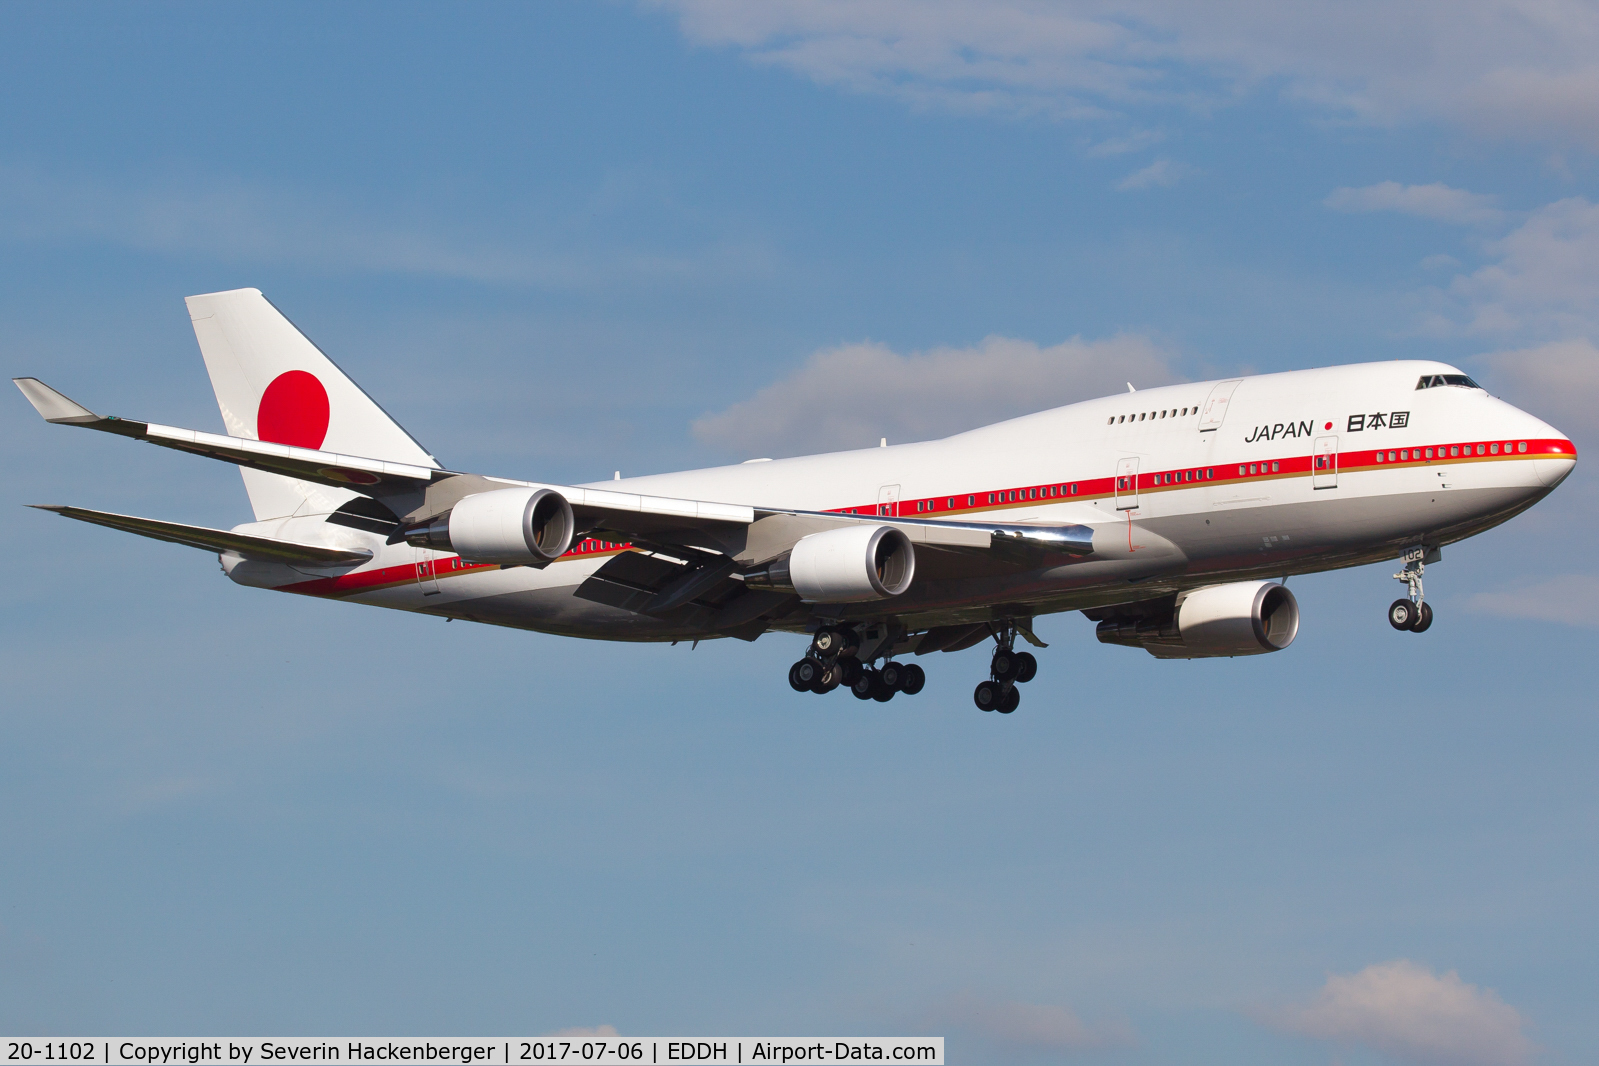 20-1102, 1991 Boeing 747-47C C/N 24731/0839, Landing at HAM because of G20 summit.